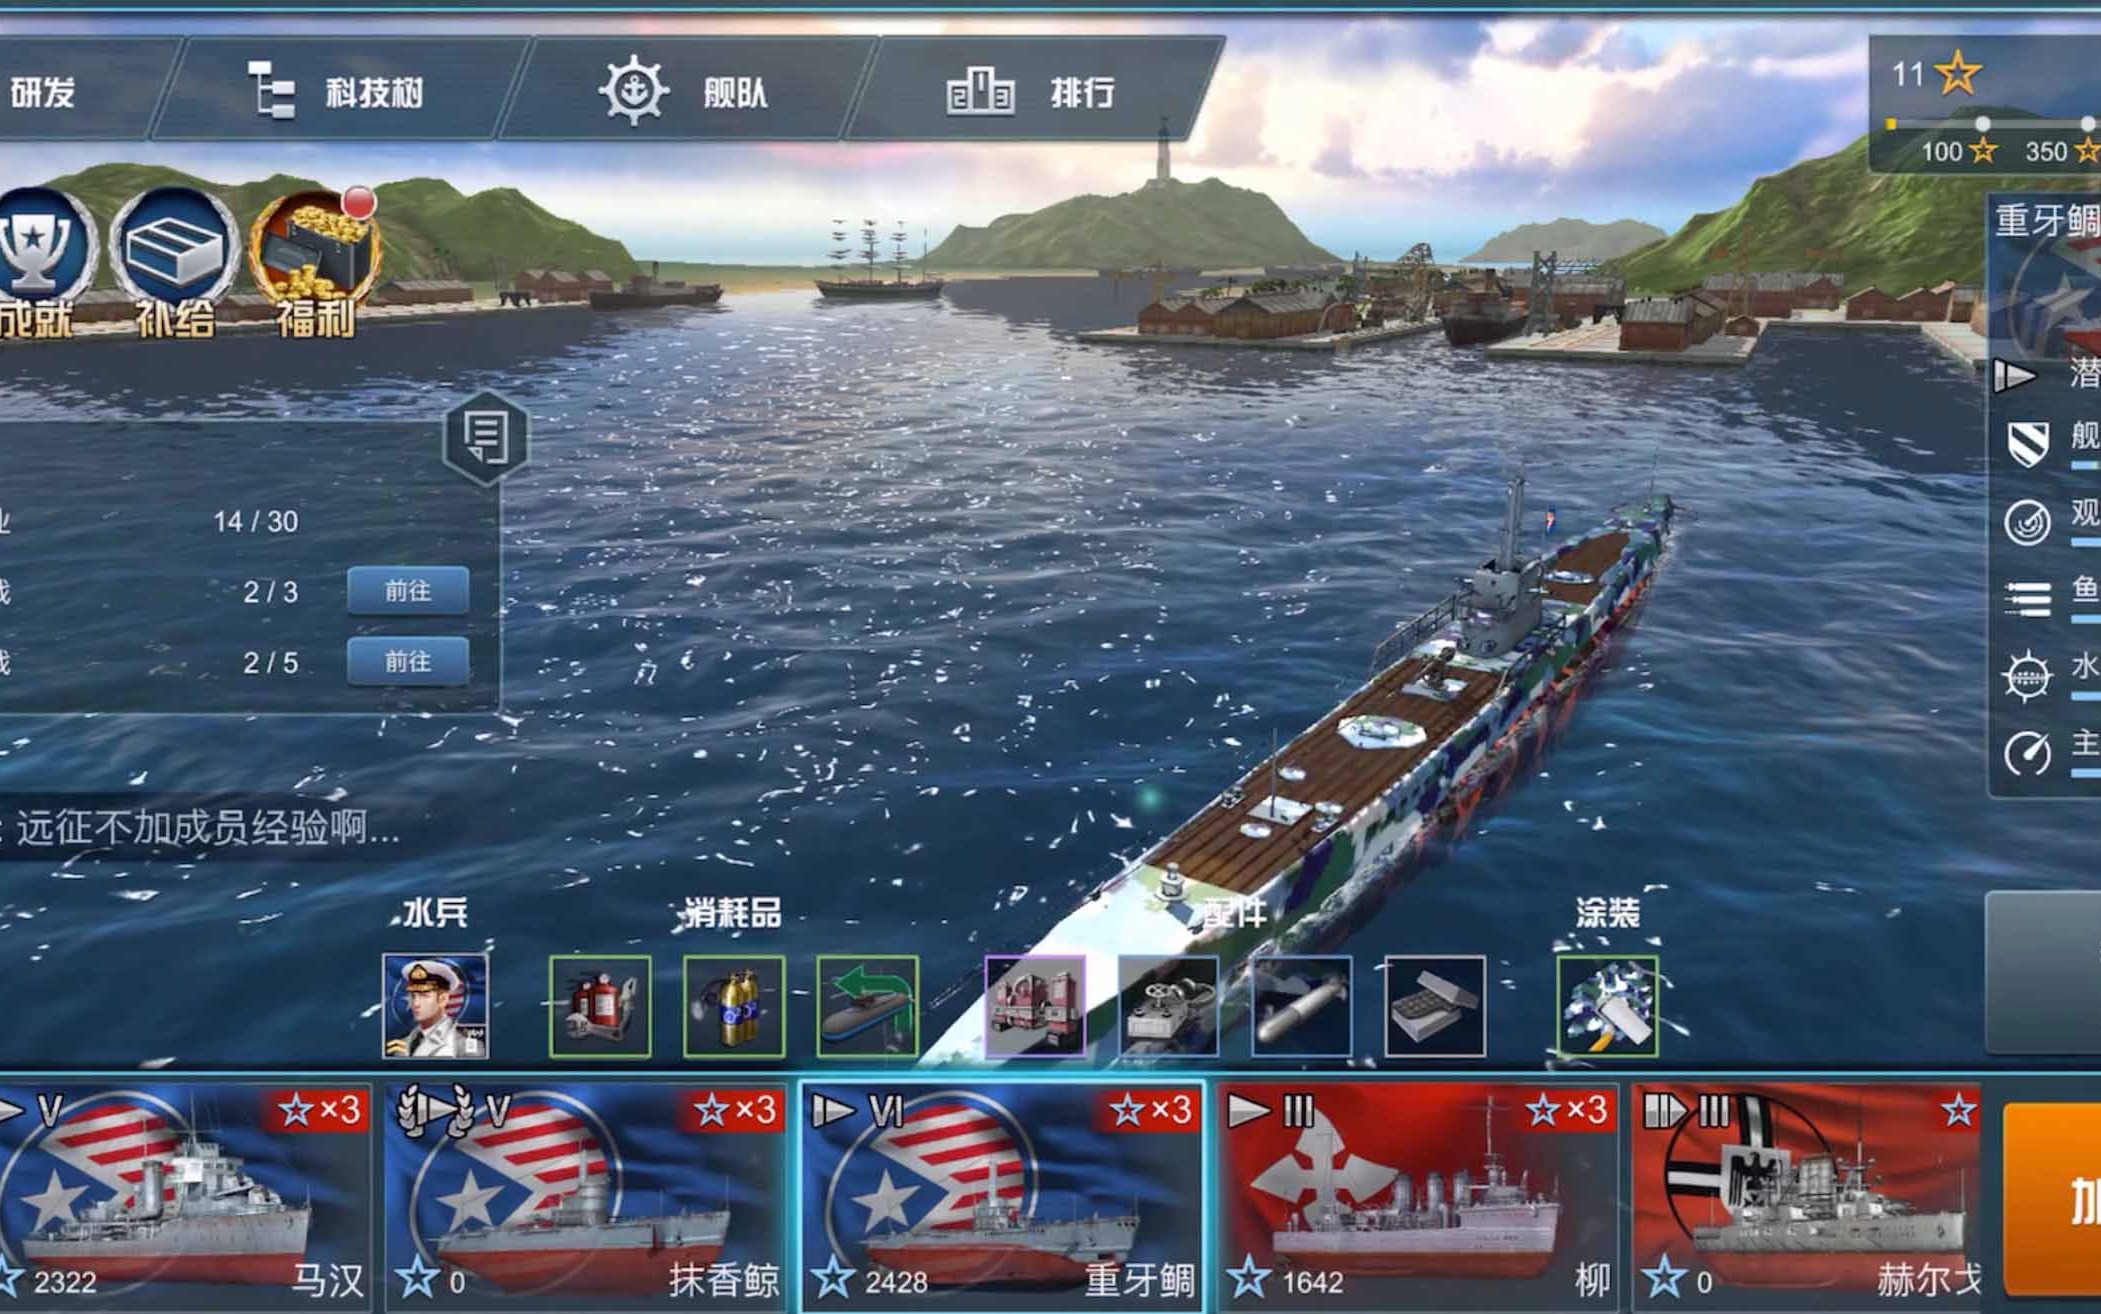 大型海战单机游戏_海战游戏 单机_单机海战游戏哪个好玩